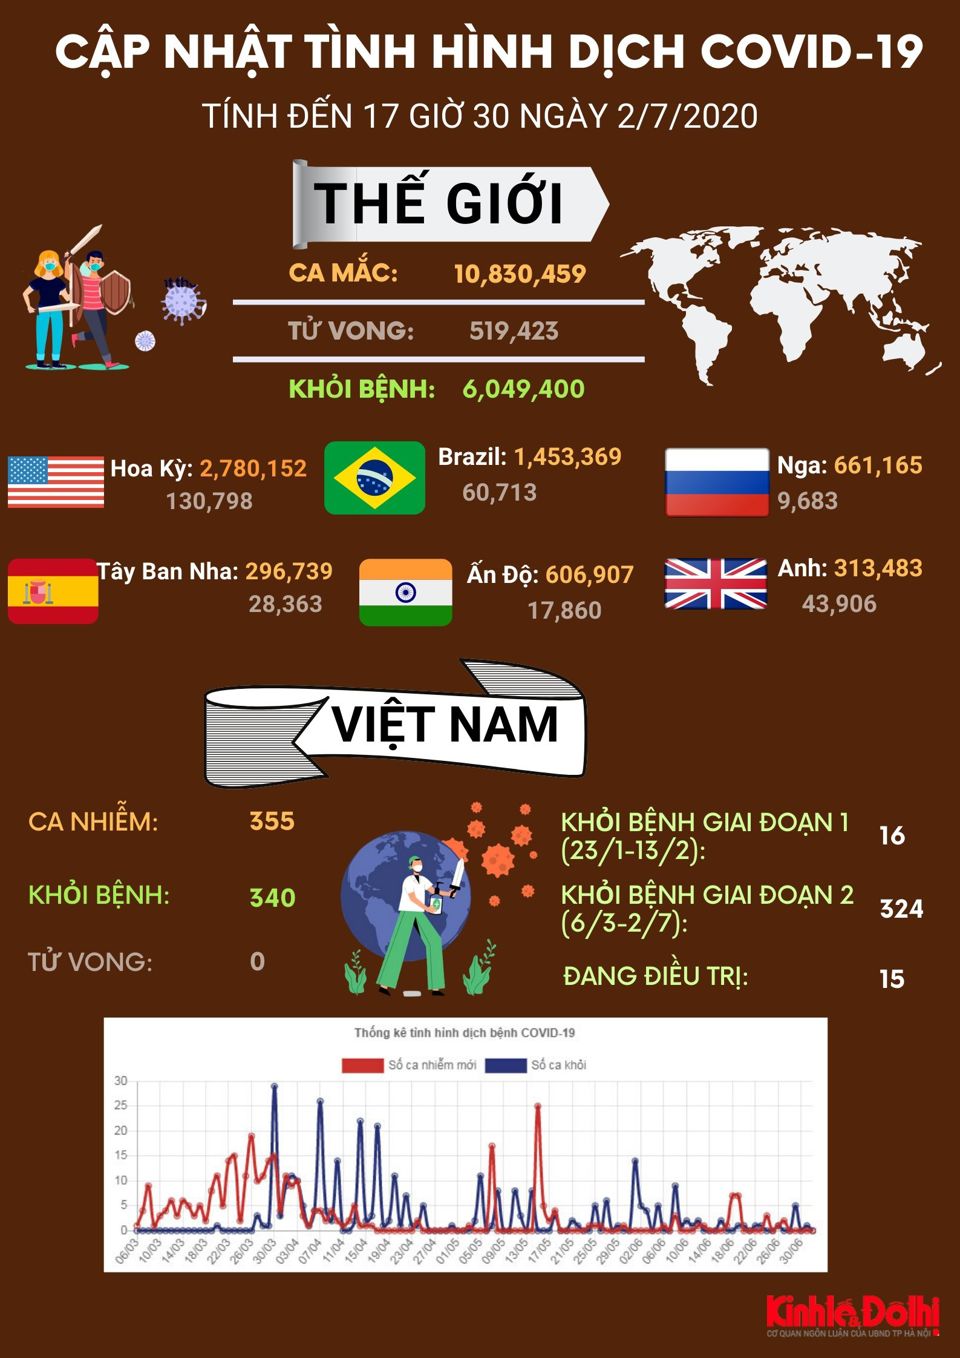 [Infographic] Thế giới đã ghi nhận gần 11 triệu người mắc Covid-19 - Ảnh 1